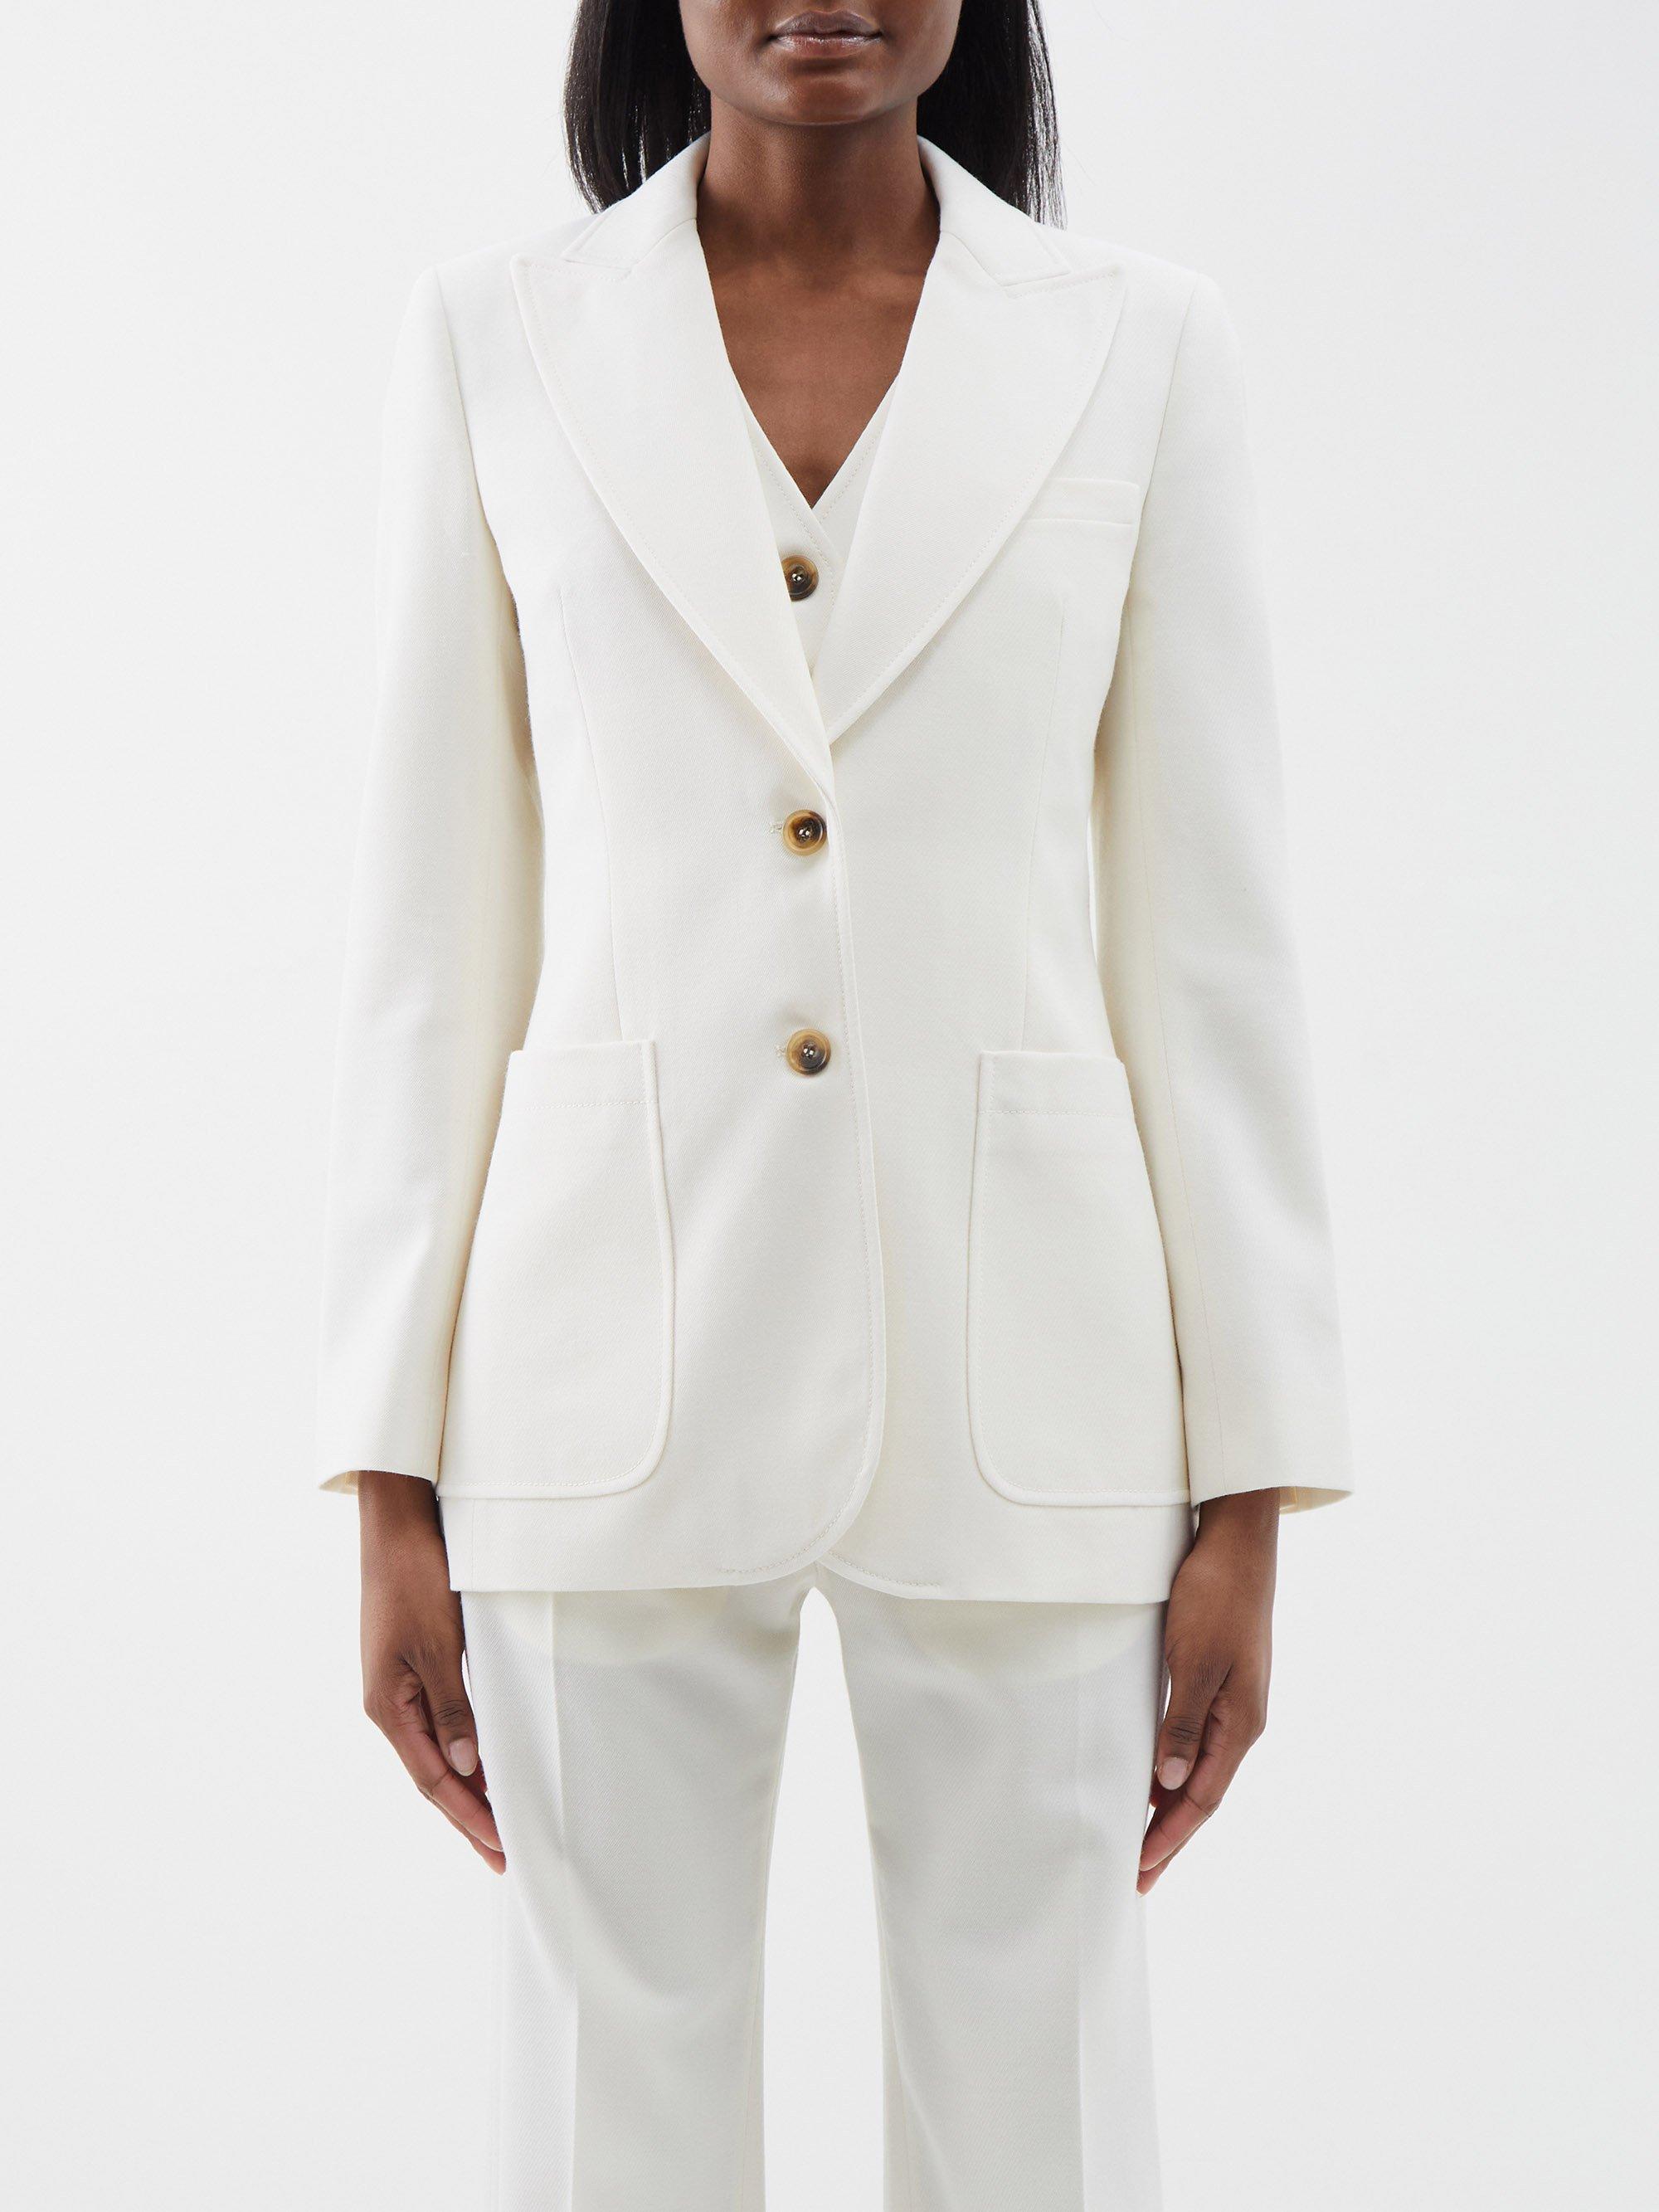 Bella Freud St. James Wool-twill Jacket in White | Lyst UK